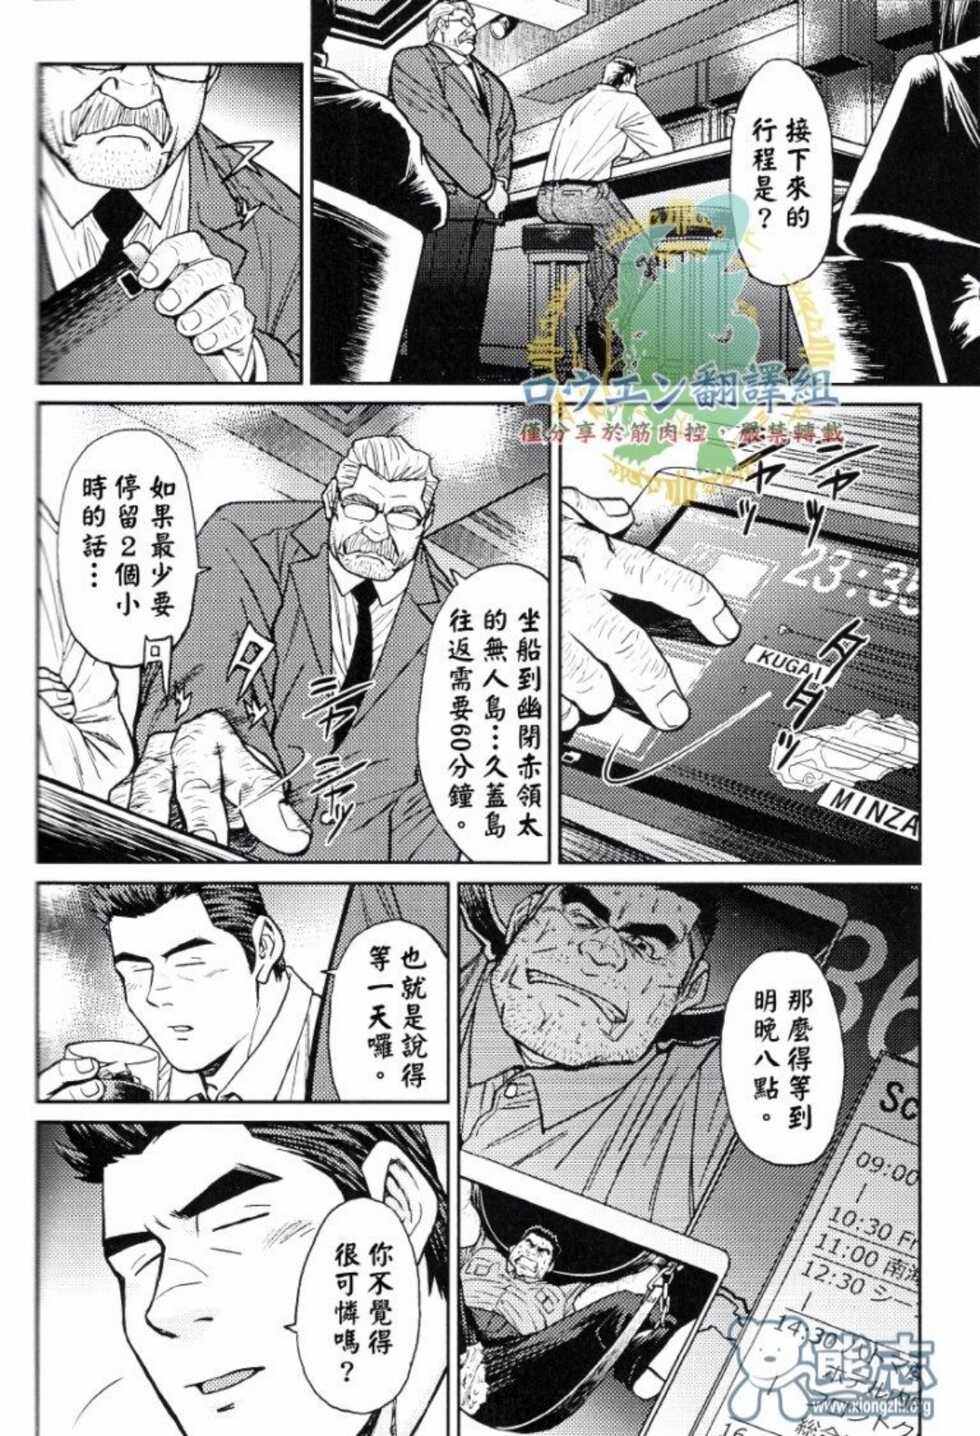 冲绳奴隶岛 02 - Page 15